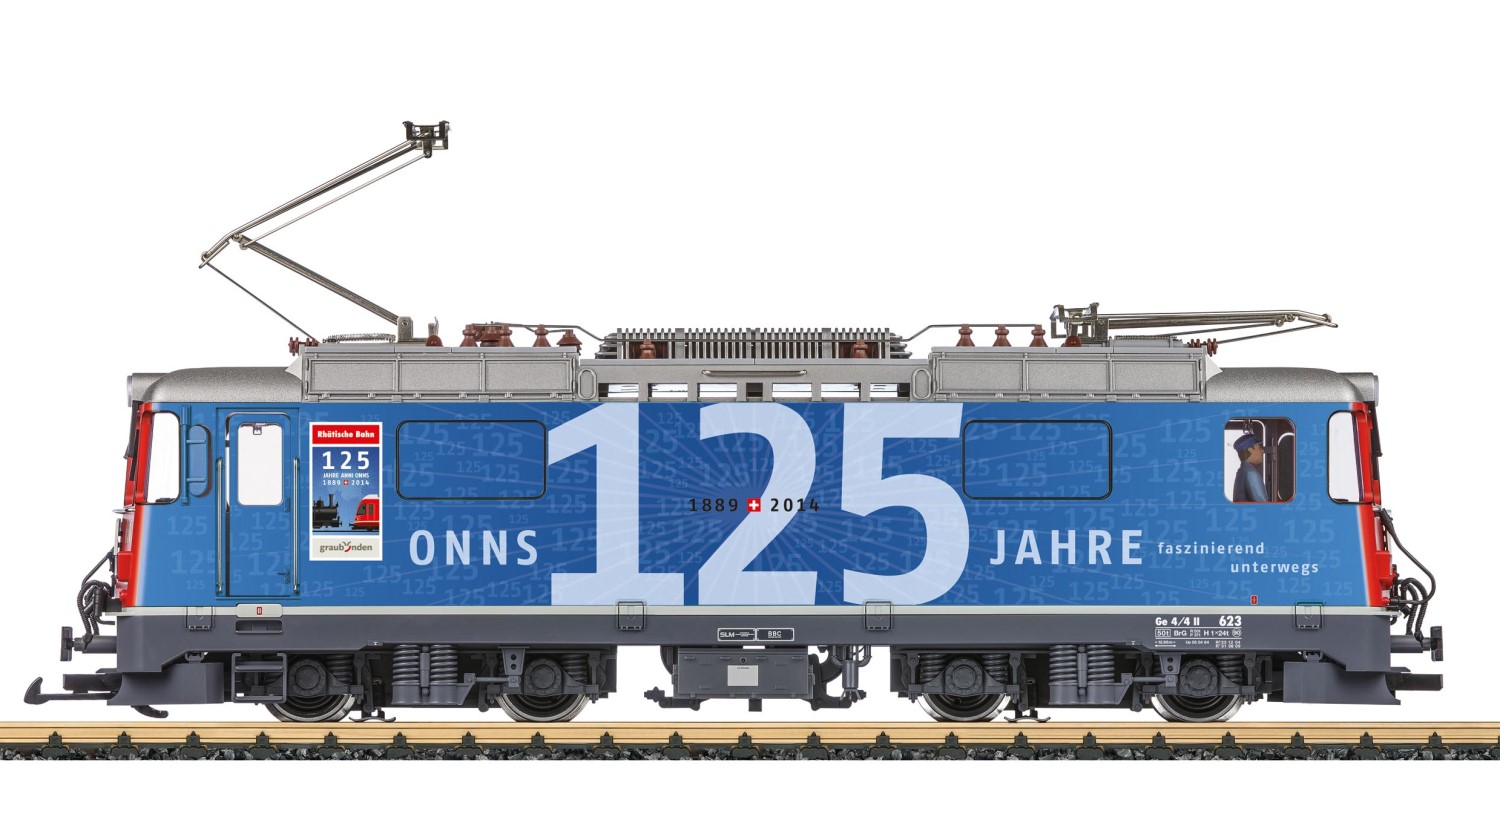 LGB Modell Art. Nr. 28439 mit Sonderdruck 125 Jahre RhB - Herbstneuheit 2014 - Lieferung 2015. Ge 4/4 II Nr. 623 